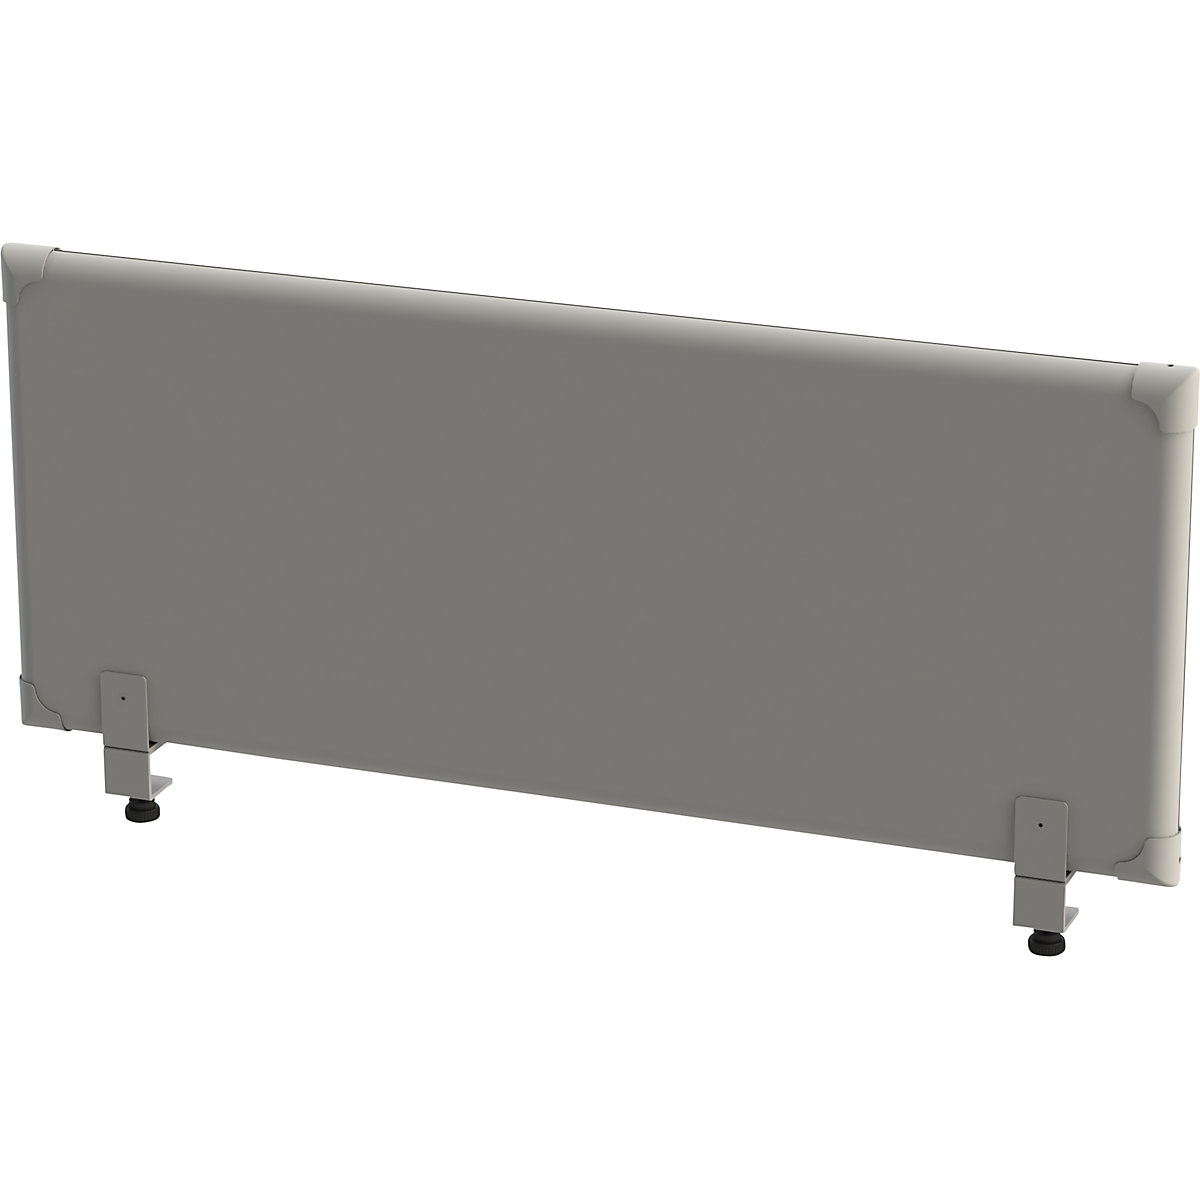 Akustik-Tischaufsatz-Paneel eurokraft pro, Höhe 450 mm, Breite 1200 mm, grau-5